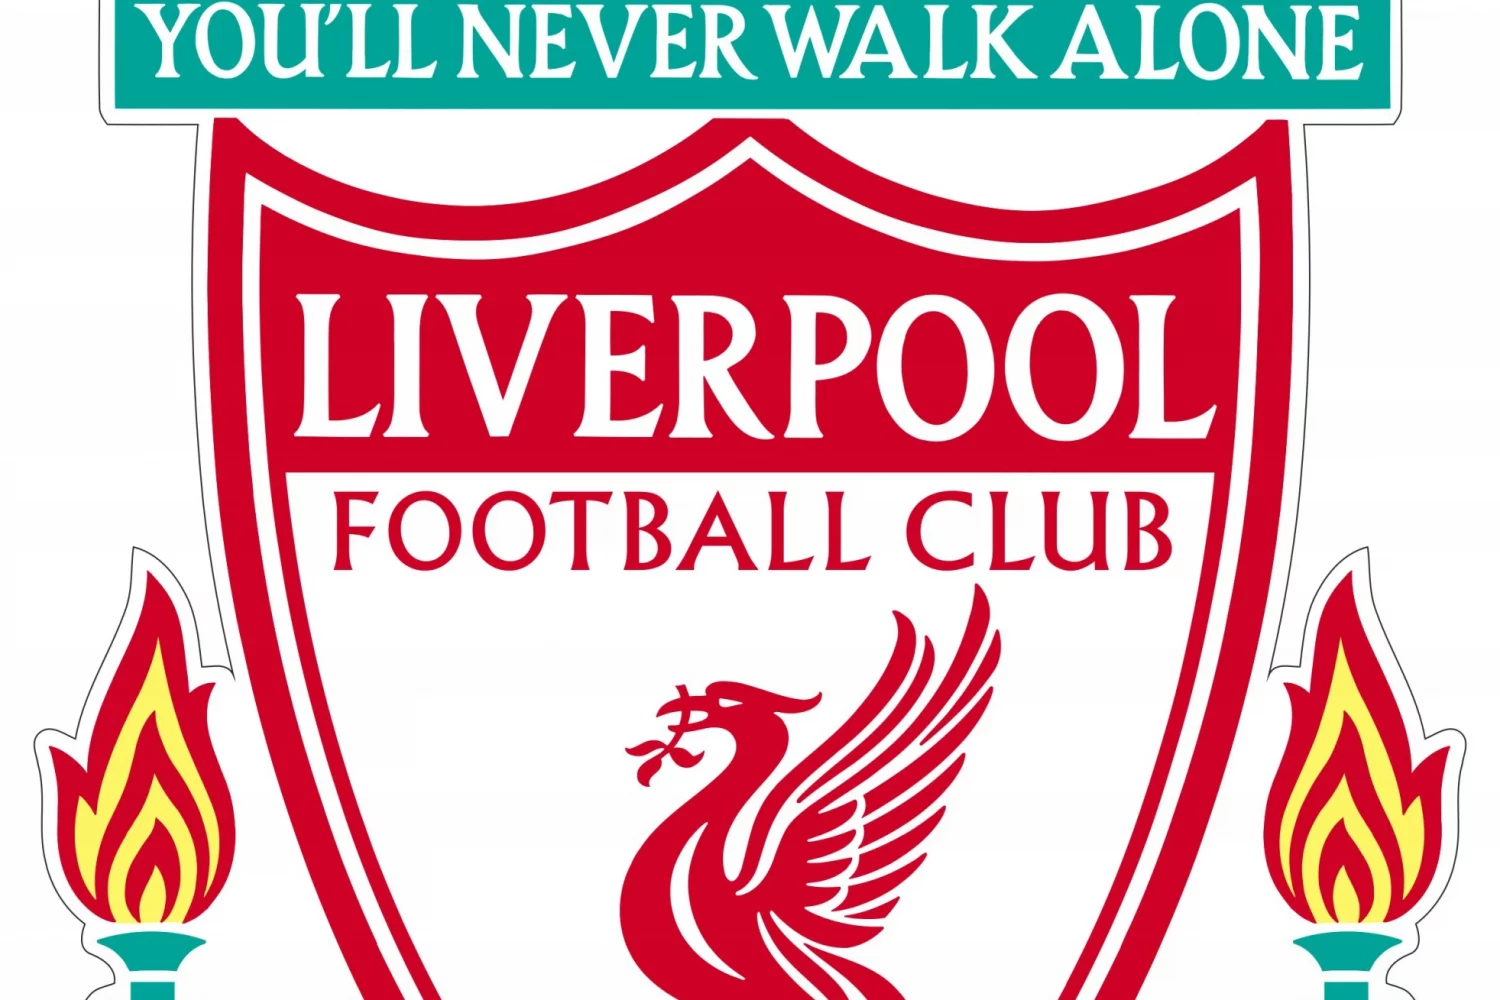 wyjazd i bilet Liverpool FC